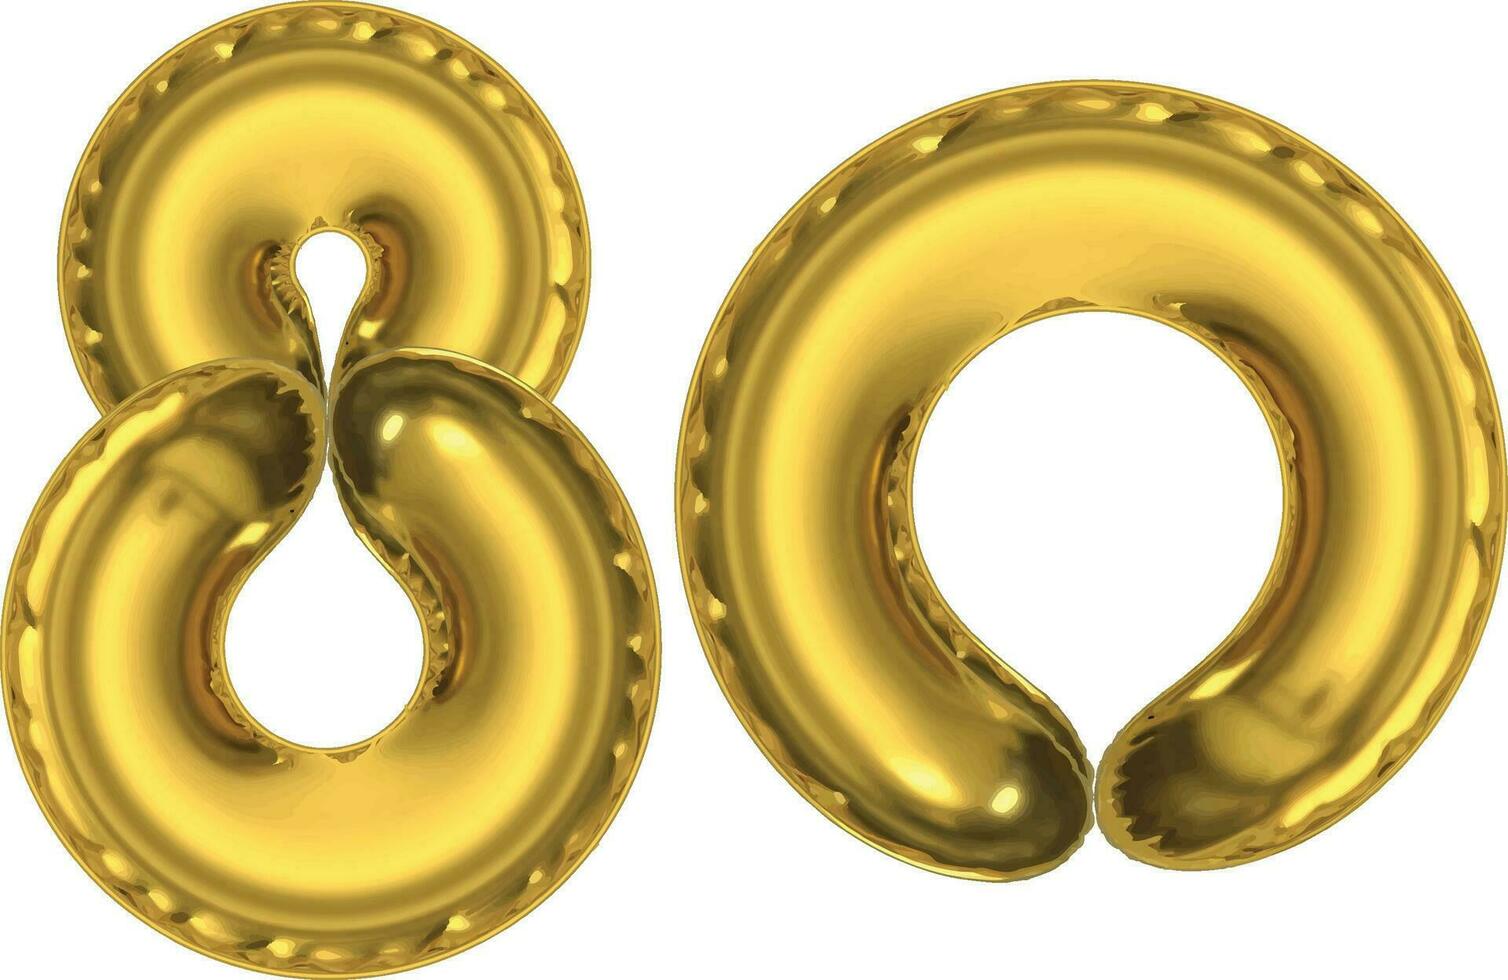 80. Gold 3d Zahlen. Poster Vorlage zum feiern 80 .. Jahrestag Veranstaltung Party. Vektor Illustration